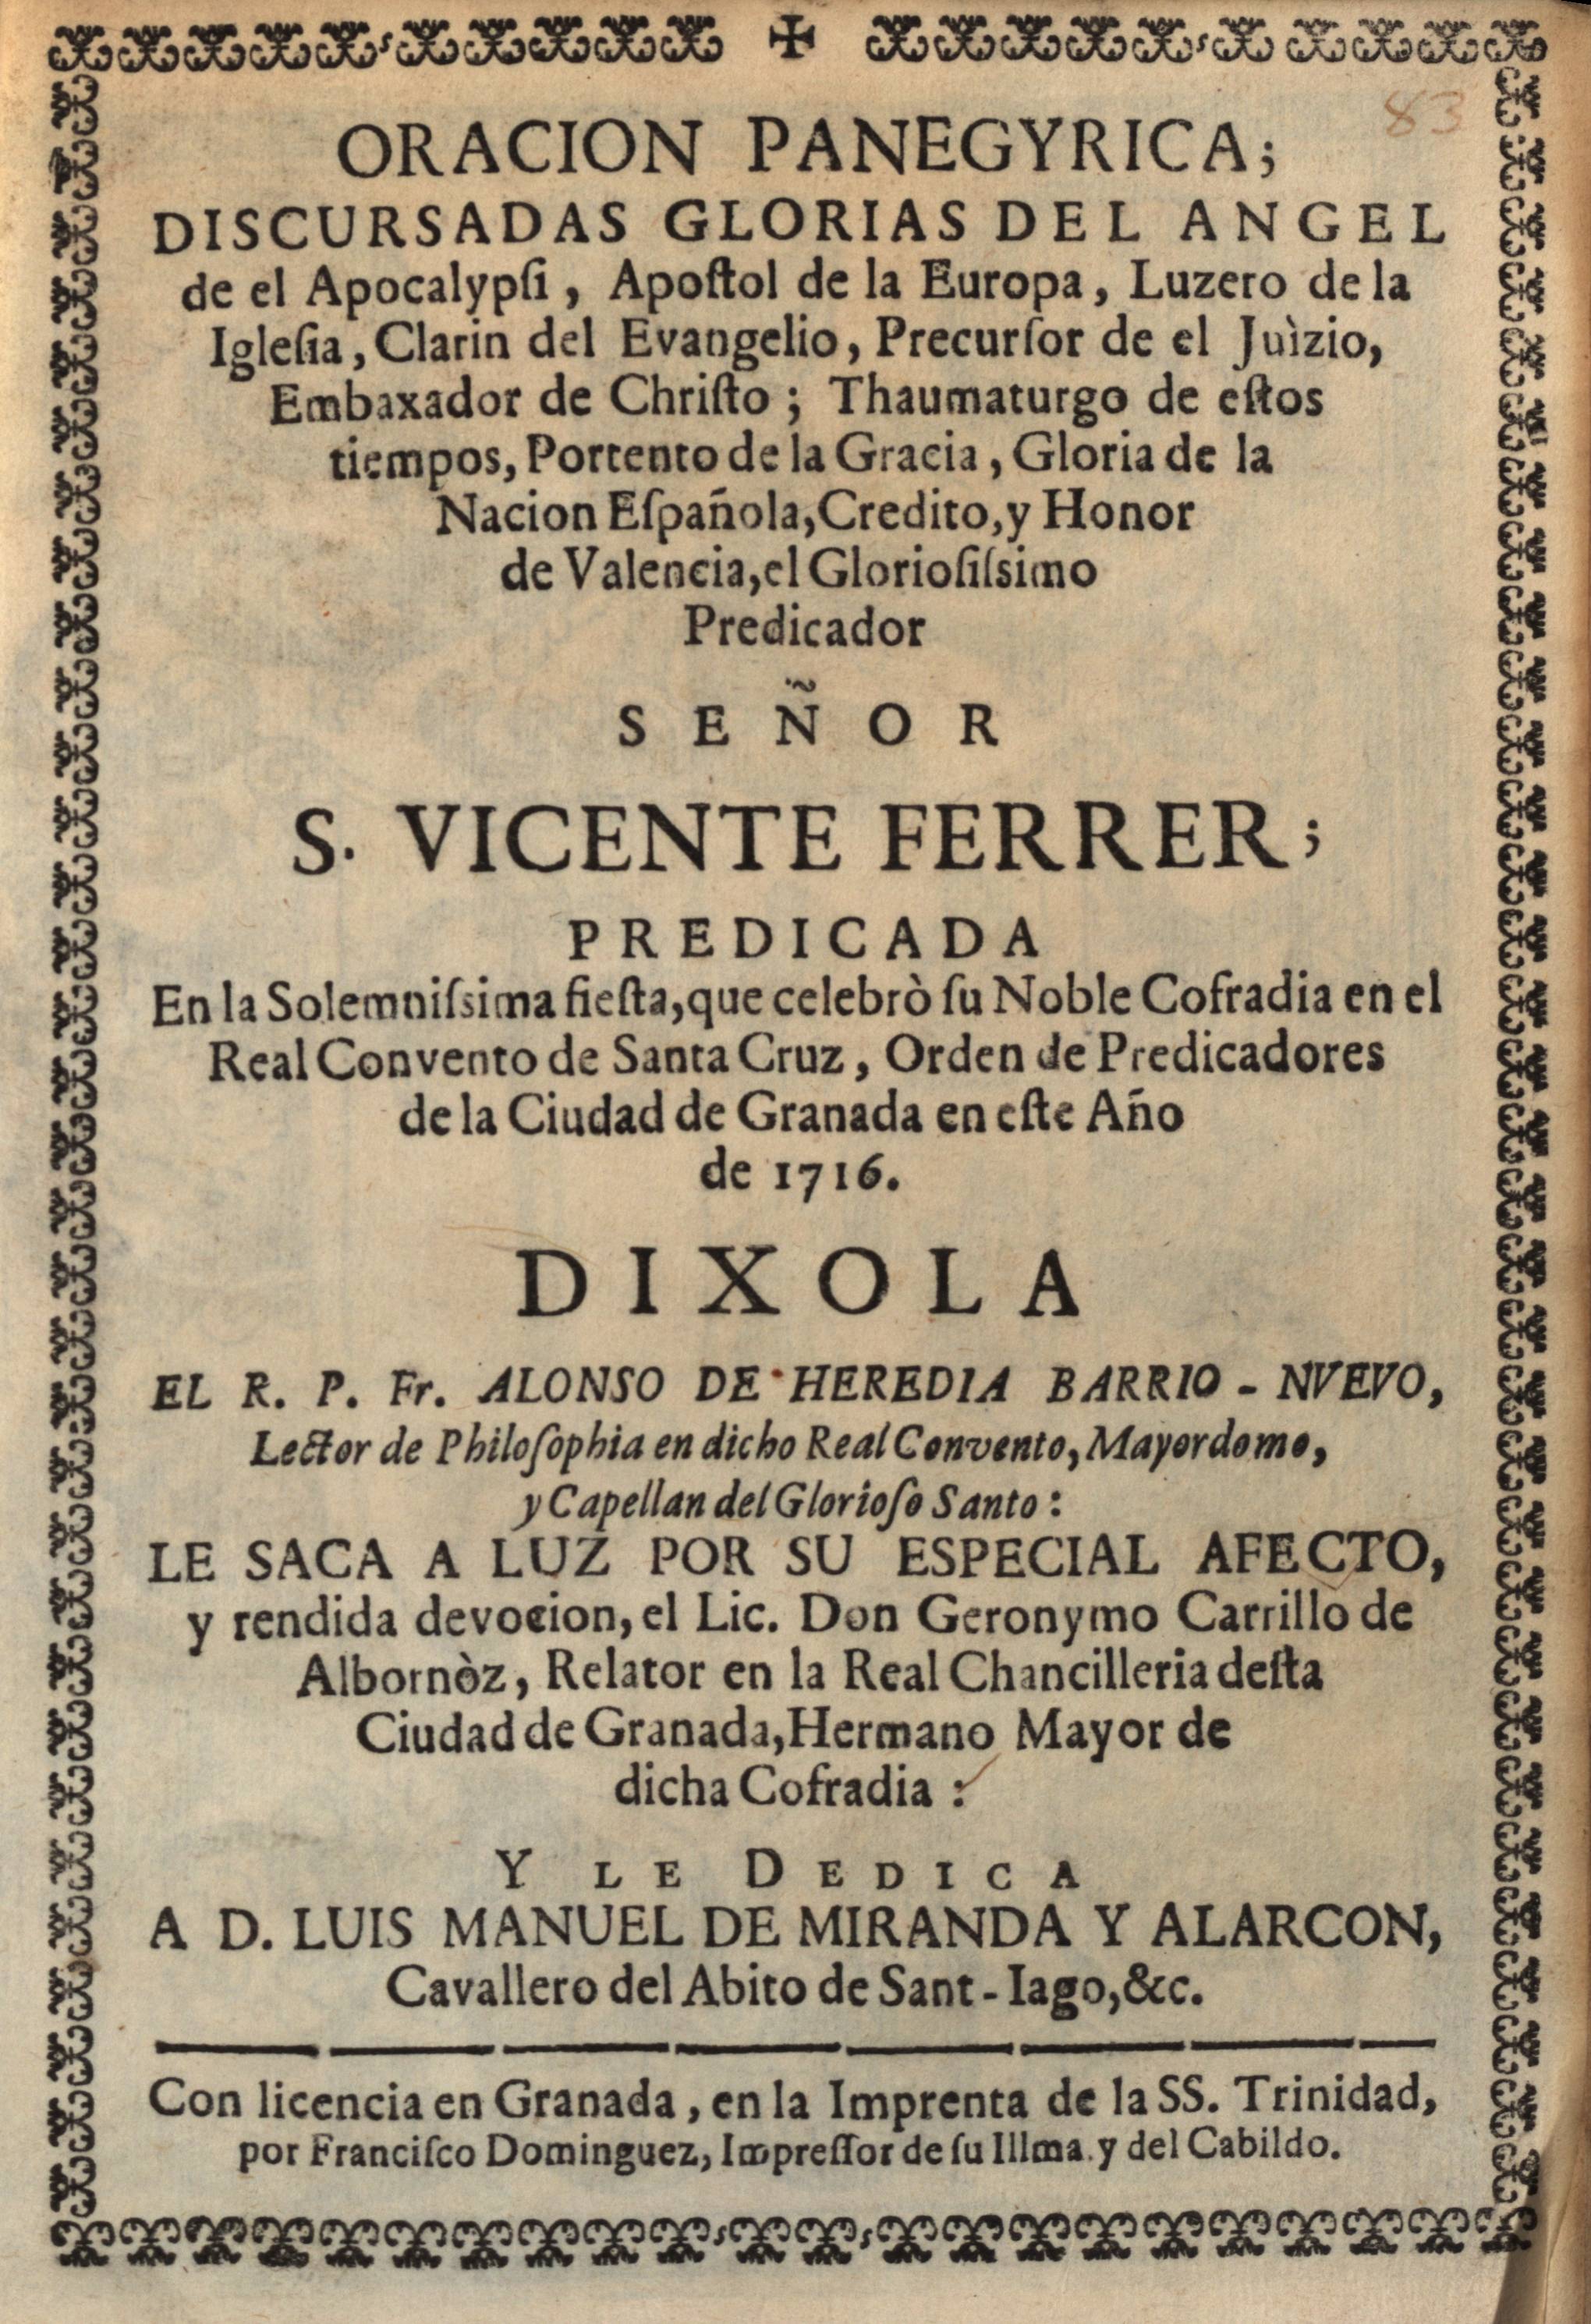 Oracion panegyrica...Señor S. Vicente Ferrer... Dixola el R. P. Fr. Alonso de Heredia Barrio- Nuevo...